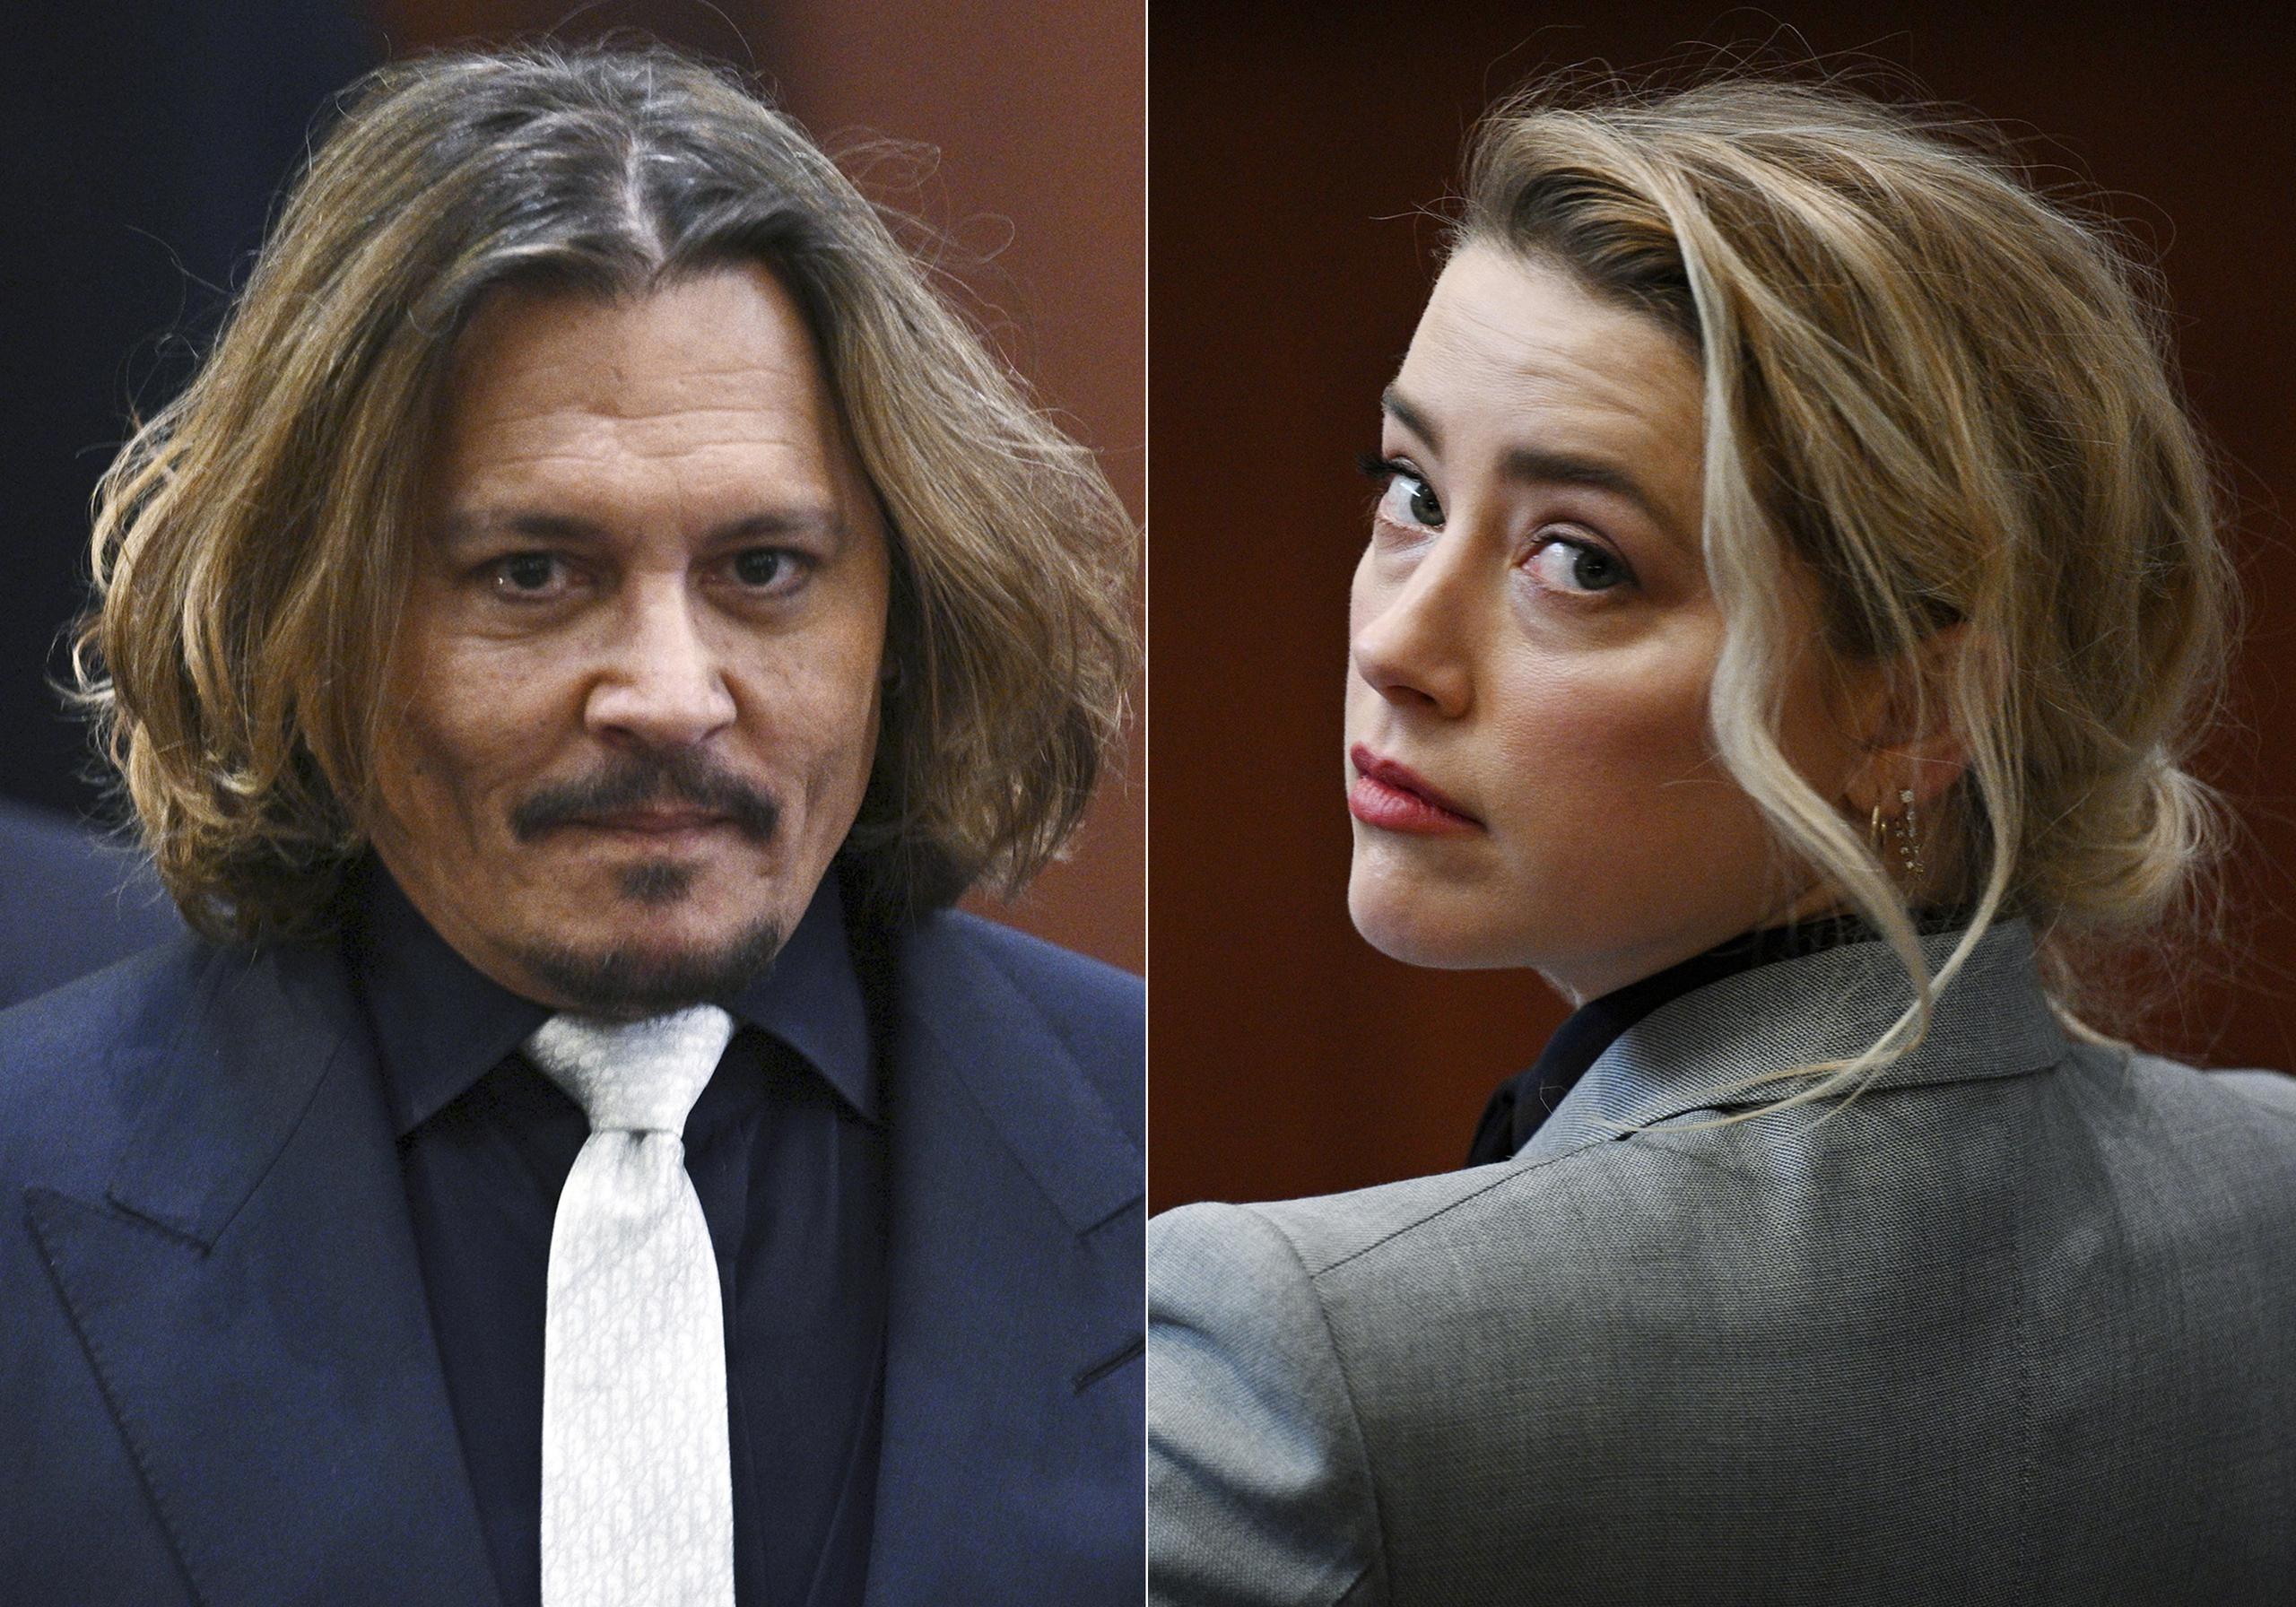 Johnny Depp (izquierda) demandó a Amber Heard (derecha) por $50 millones en el Tribunal de Circuito del Condado de Fairfax en Virginia debido a un artículo de opinión que publicó la actriz en diciembre de 2018 en el diario The Washington Post describiéndose como “una figura pública que representa el abuso doméstico”. Heard, por su parte, lo contrademandó por $100 millones.